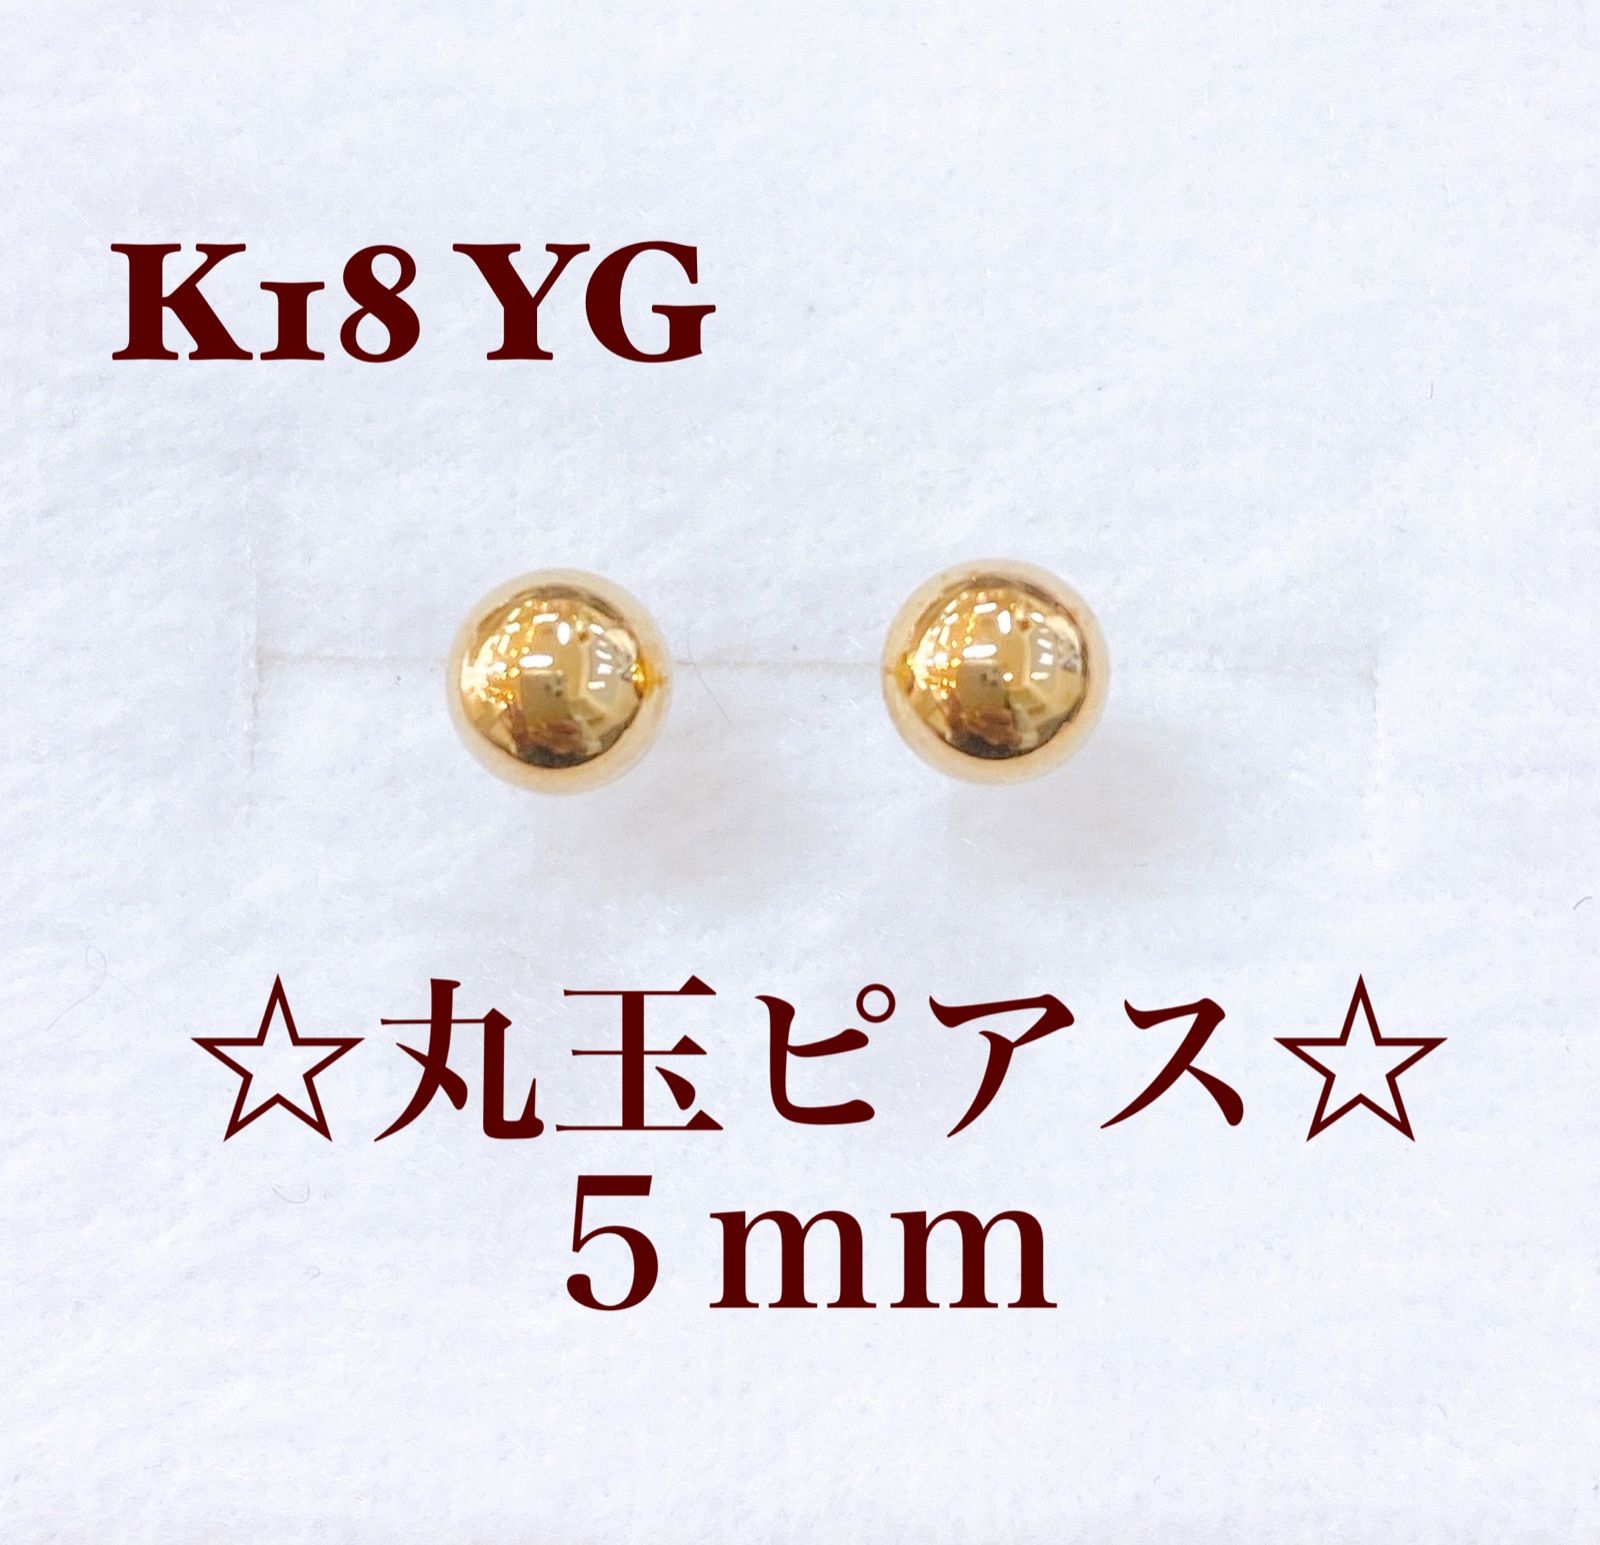 ❁︎K18 YG丸玉(5mm)ピアス❁︎約14mmポスト太さ